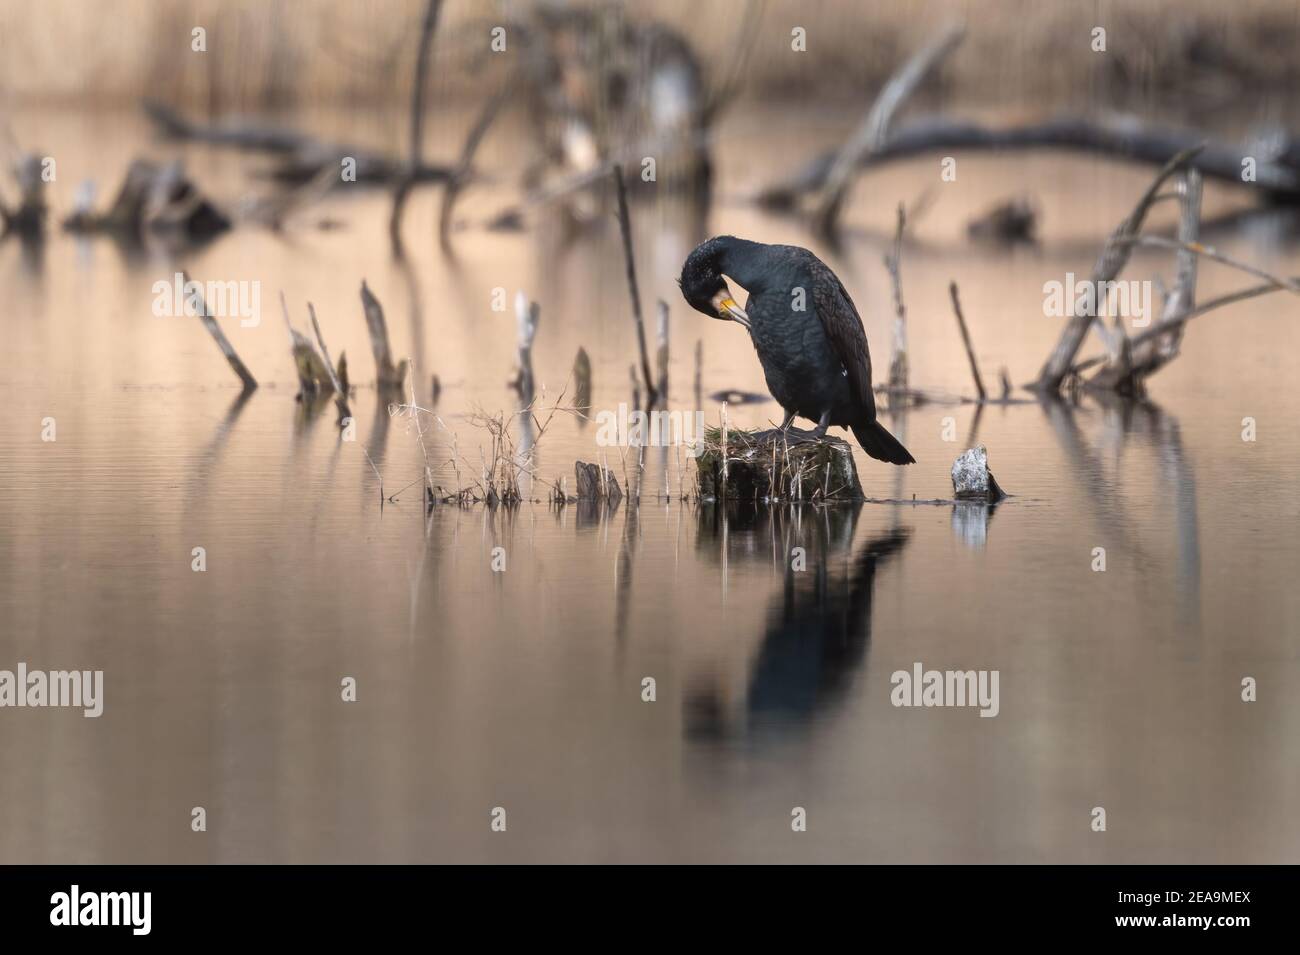 Grande cormorano (Phalacrocorax carbo) in piedi su un ceppo nel mezzo dello stagno che pulisce le sue piume, Grande riflessione cormorano in acqua Foto Stock